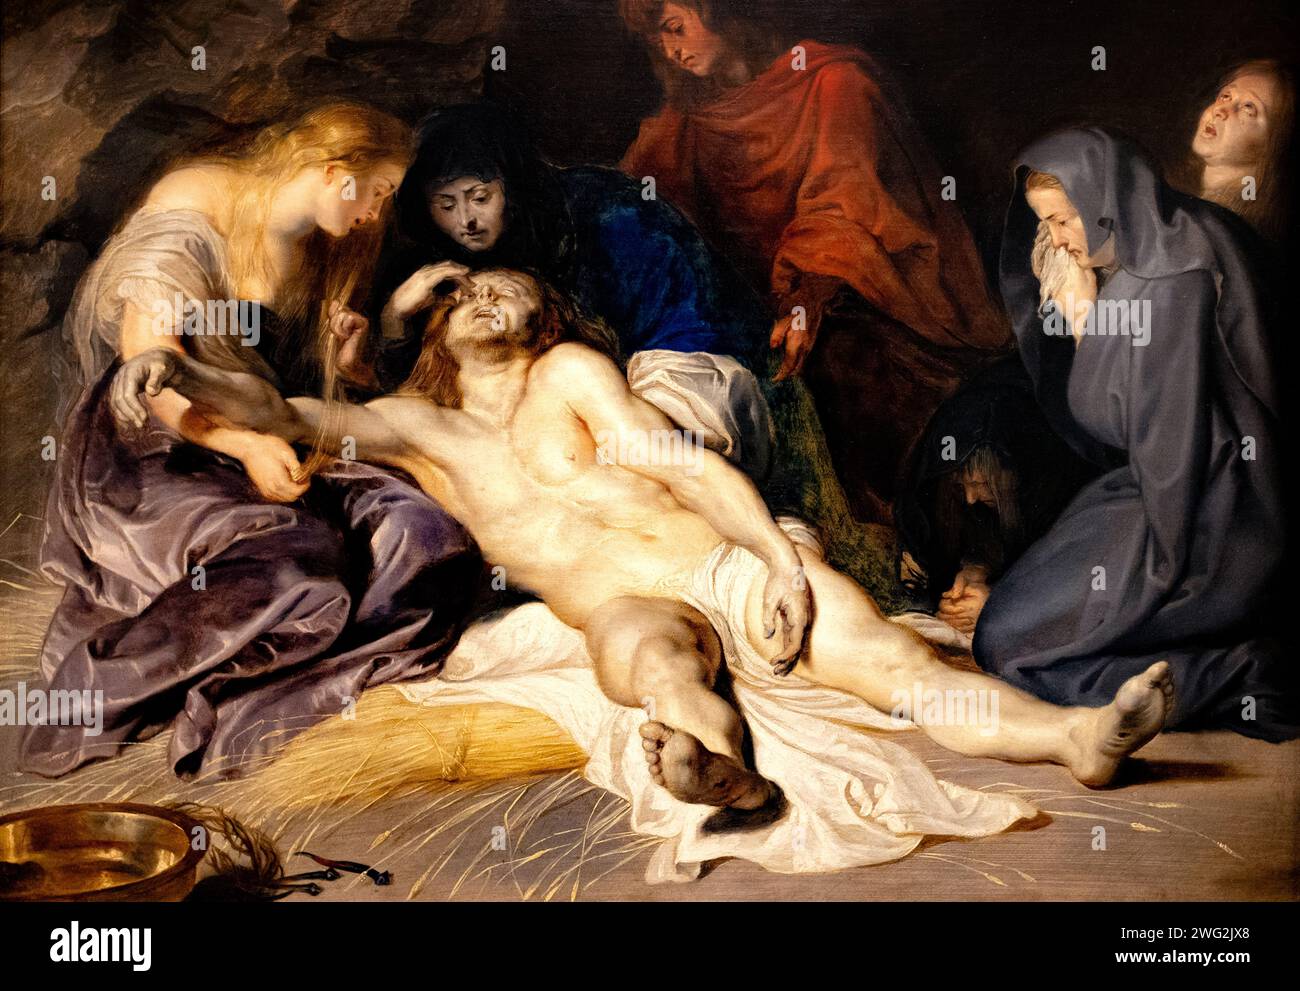 Pierre Paul Rubens peinture ; 'la Lamentation' 1614 ; Marie Madeleine, la Vierge Marie et les trois Maries autour du corps de Jésus-Christ. xviie siècle Banque D'Images